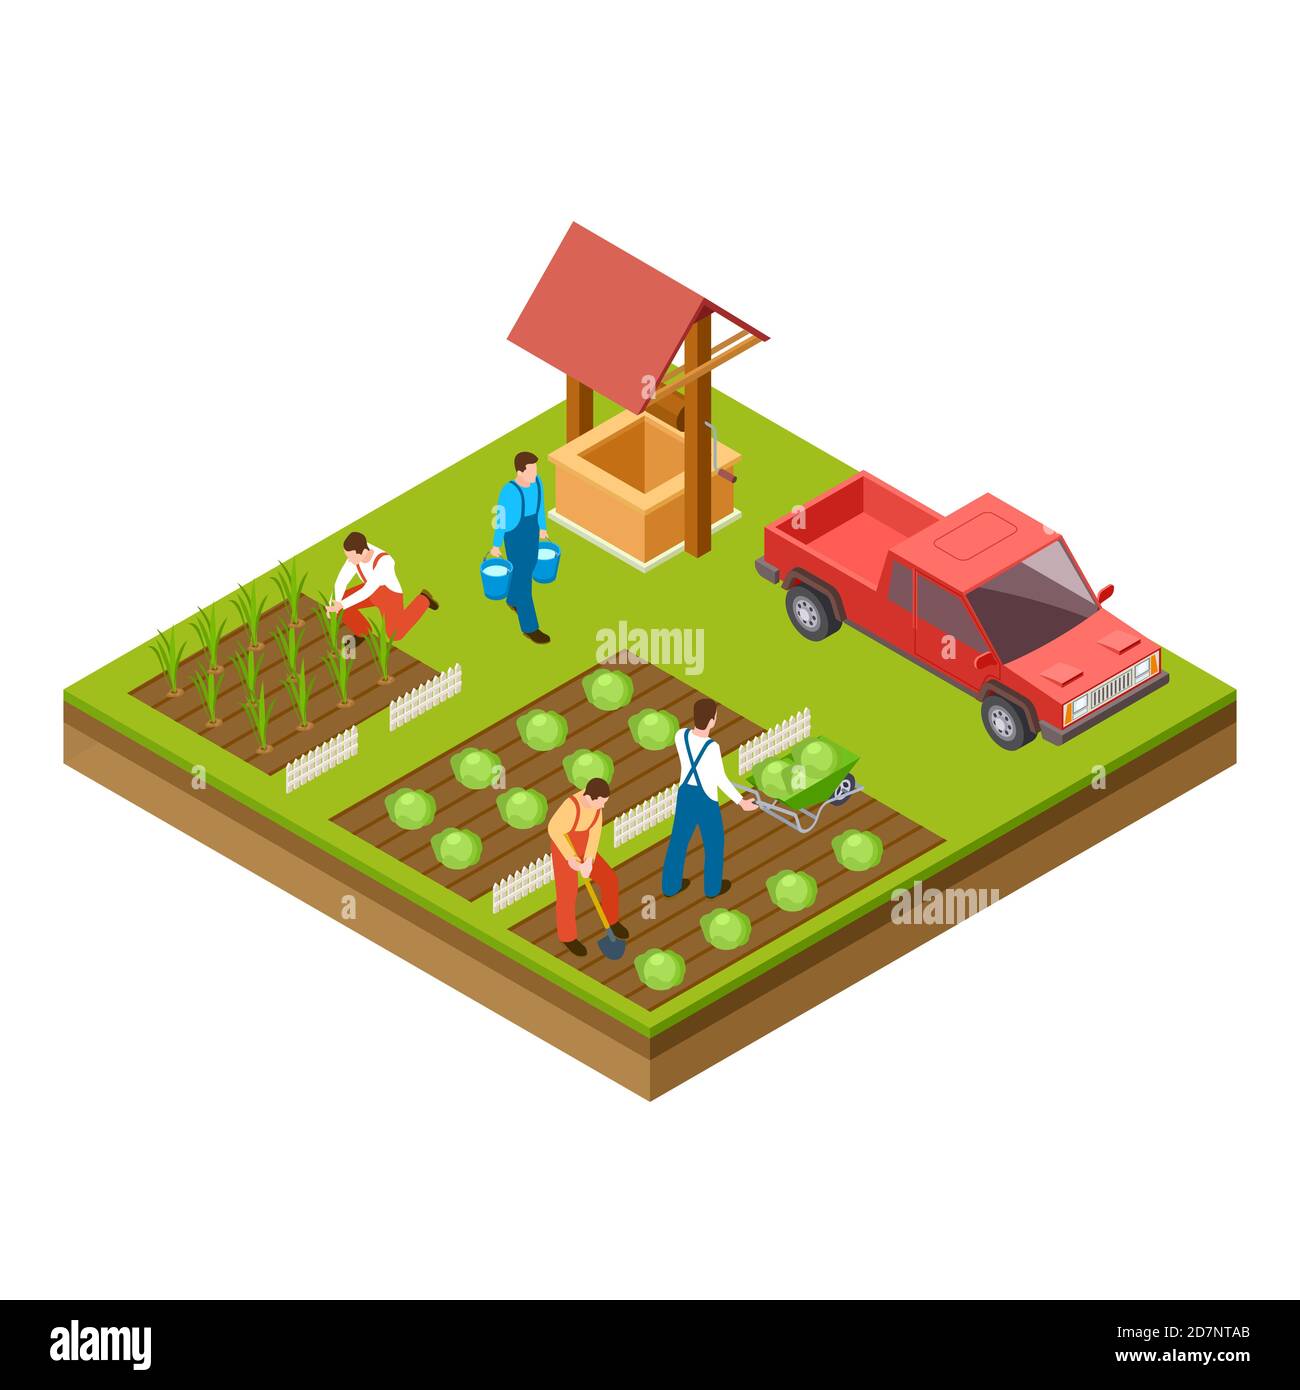 Garten- und Erntevektor 3d isometrisches Konzept. Sammeln Ernte und Landwirtschaft wachsen Illustration Stock Vektor